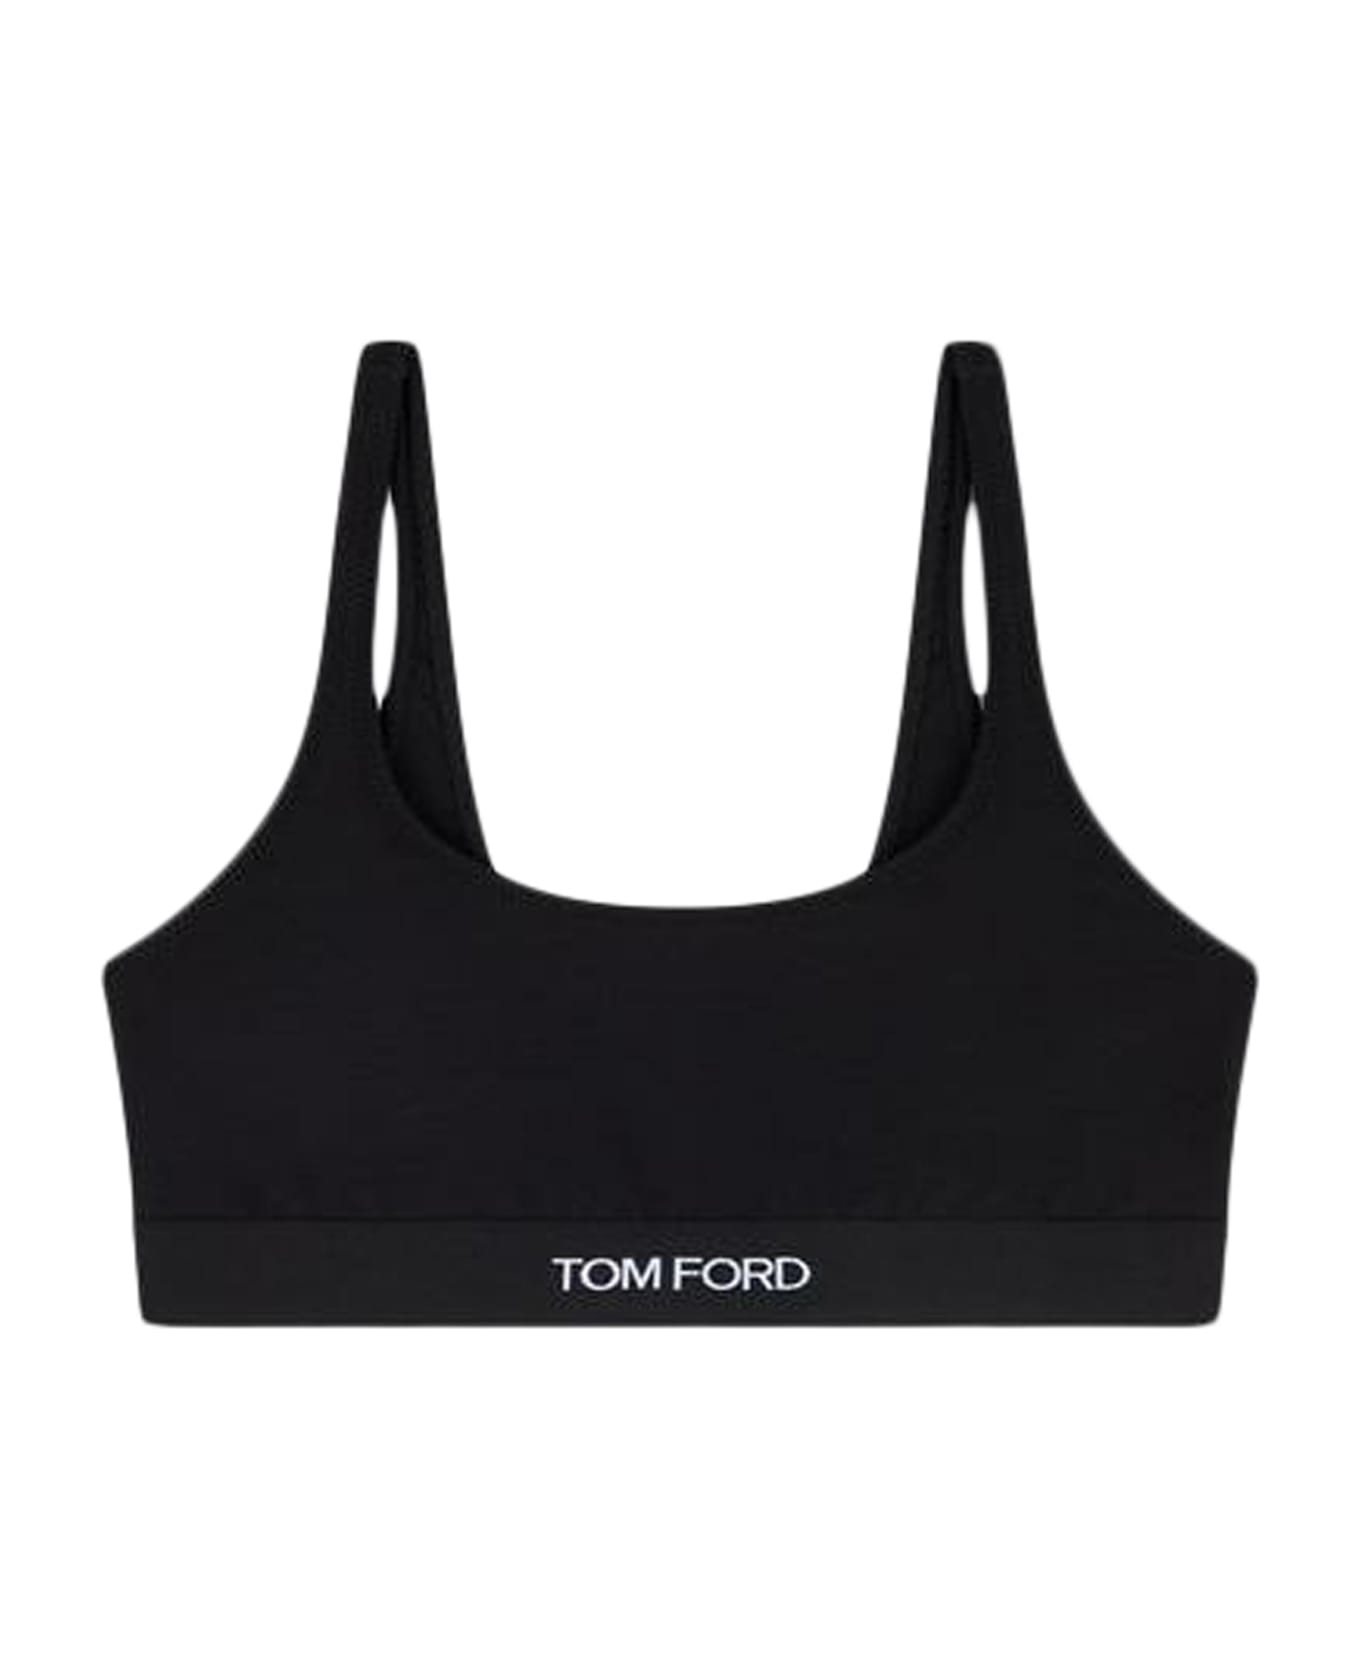 Tom Ford Underwear Bra - Black ブラジャー